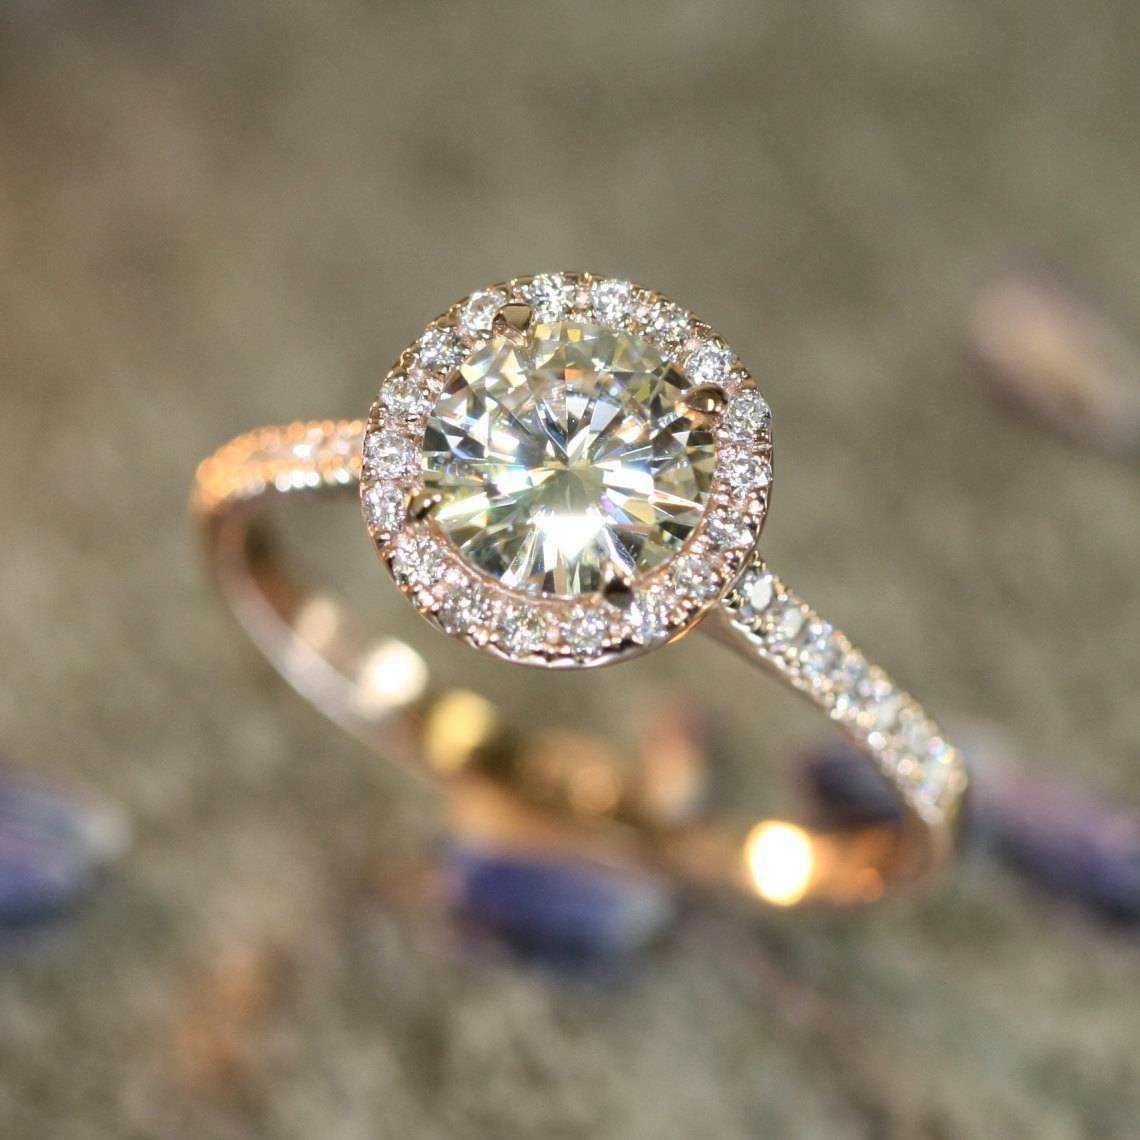 LaMoreDesign.etsy.com – 14k Rose Gold Halo Diamond Moissanite Engagement Ring in Half Eternity Diamond Wedding Band 7mm Round Forever Brilliant Moissanite  $1498+